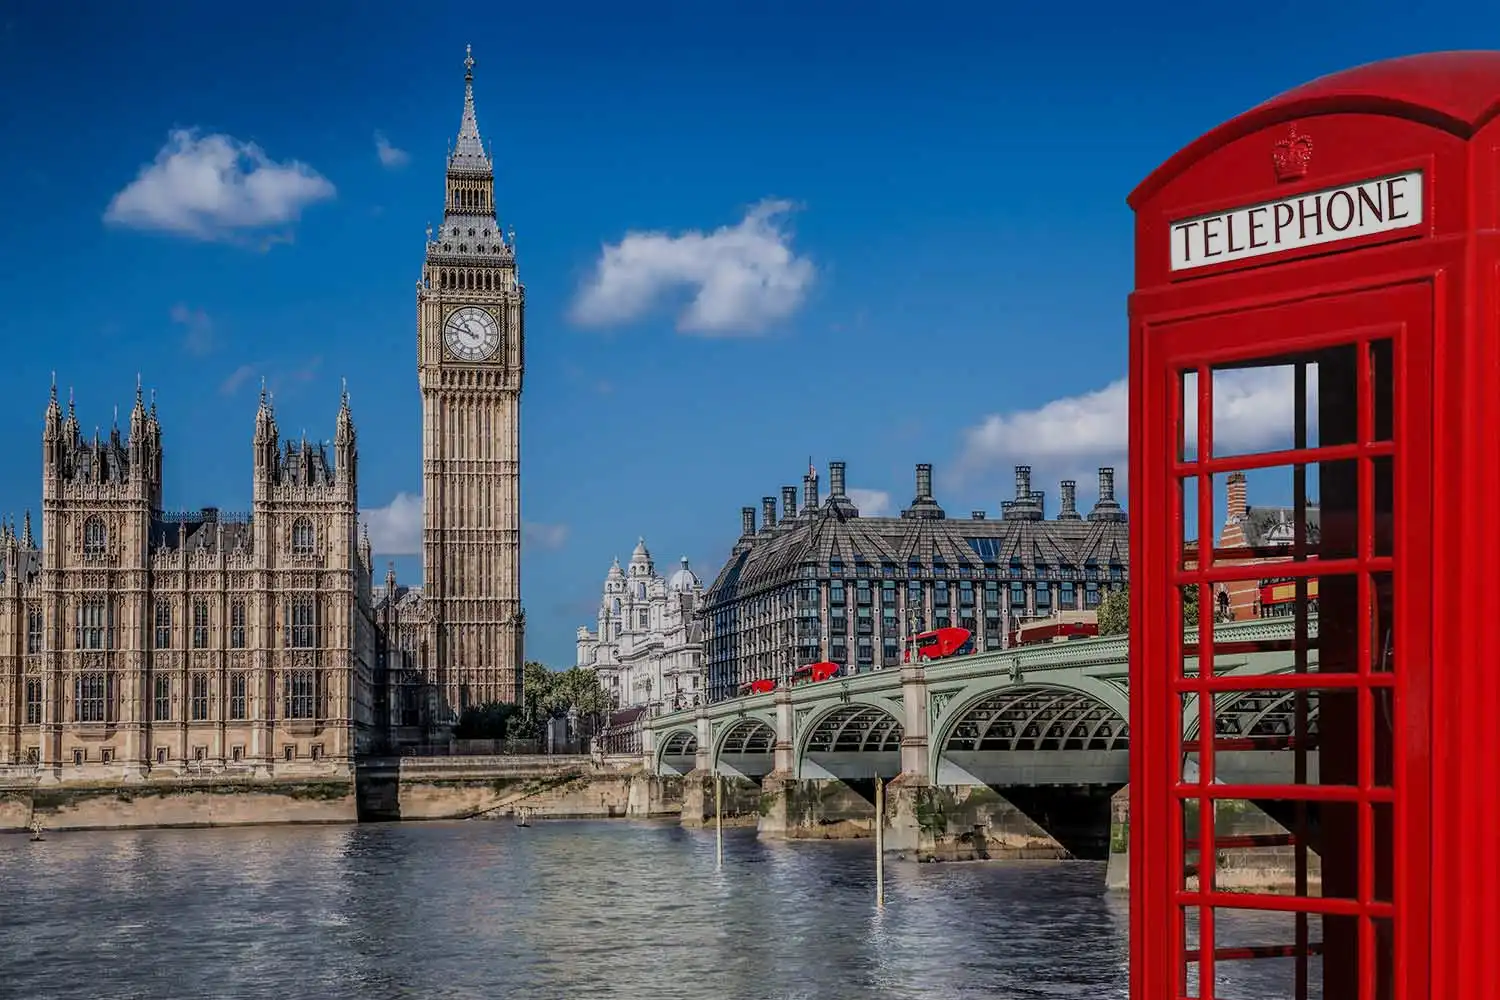 Les célèbres monuments de Londres, le Palais de Westminster et Big Ben, avec une cabine téléphonique rouge au premier plan